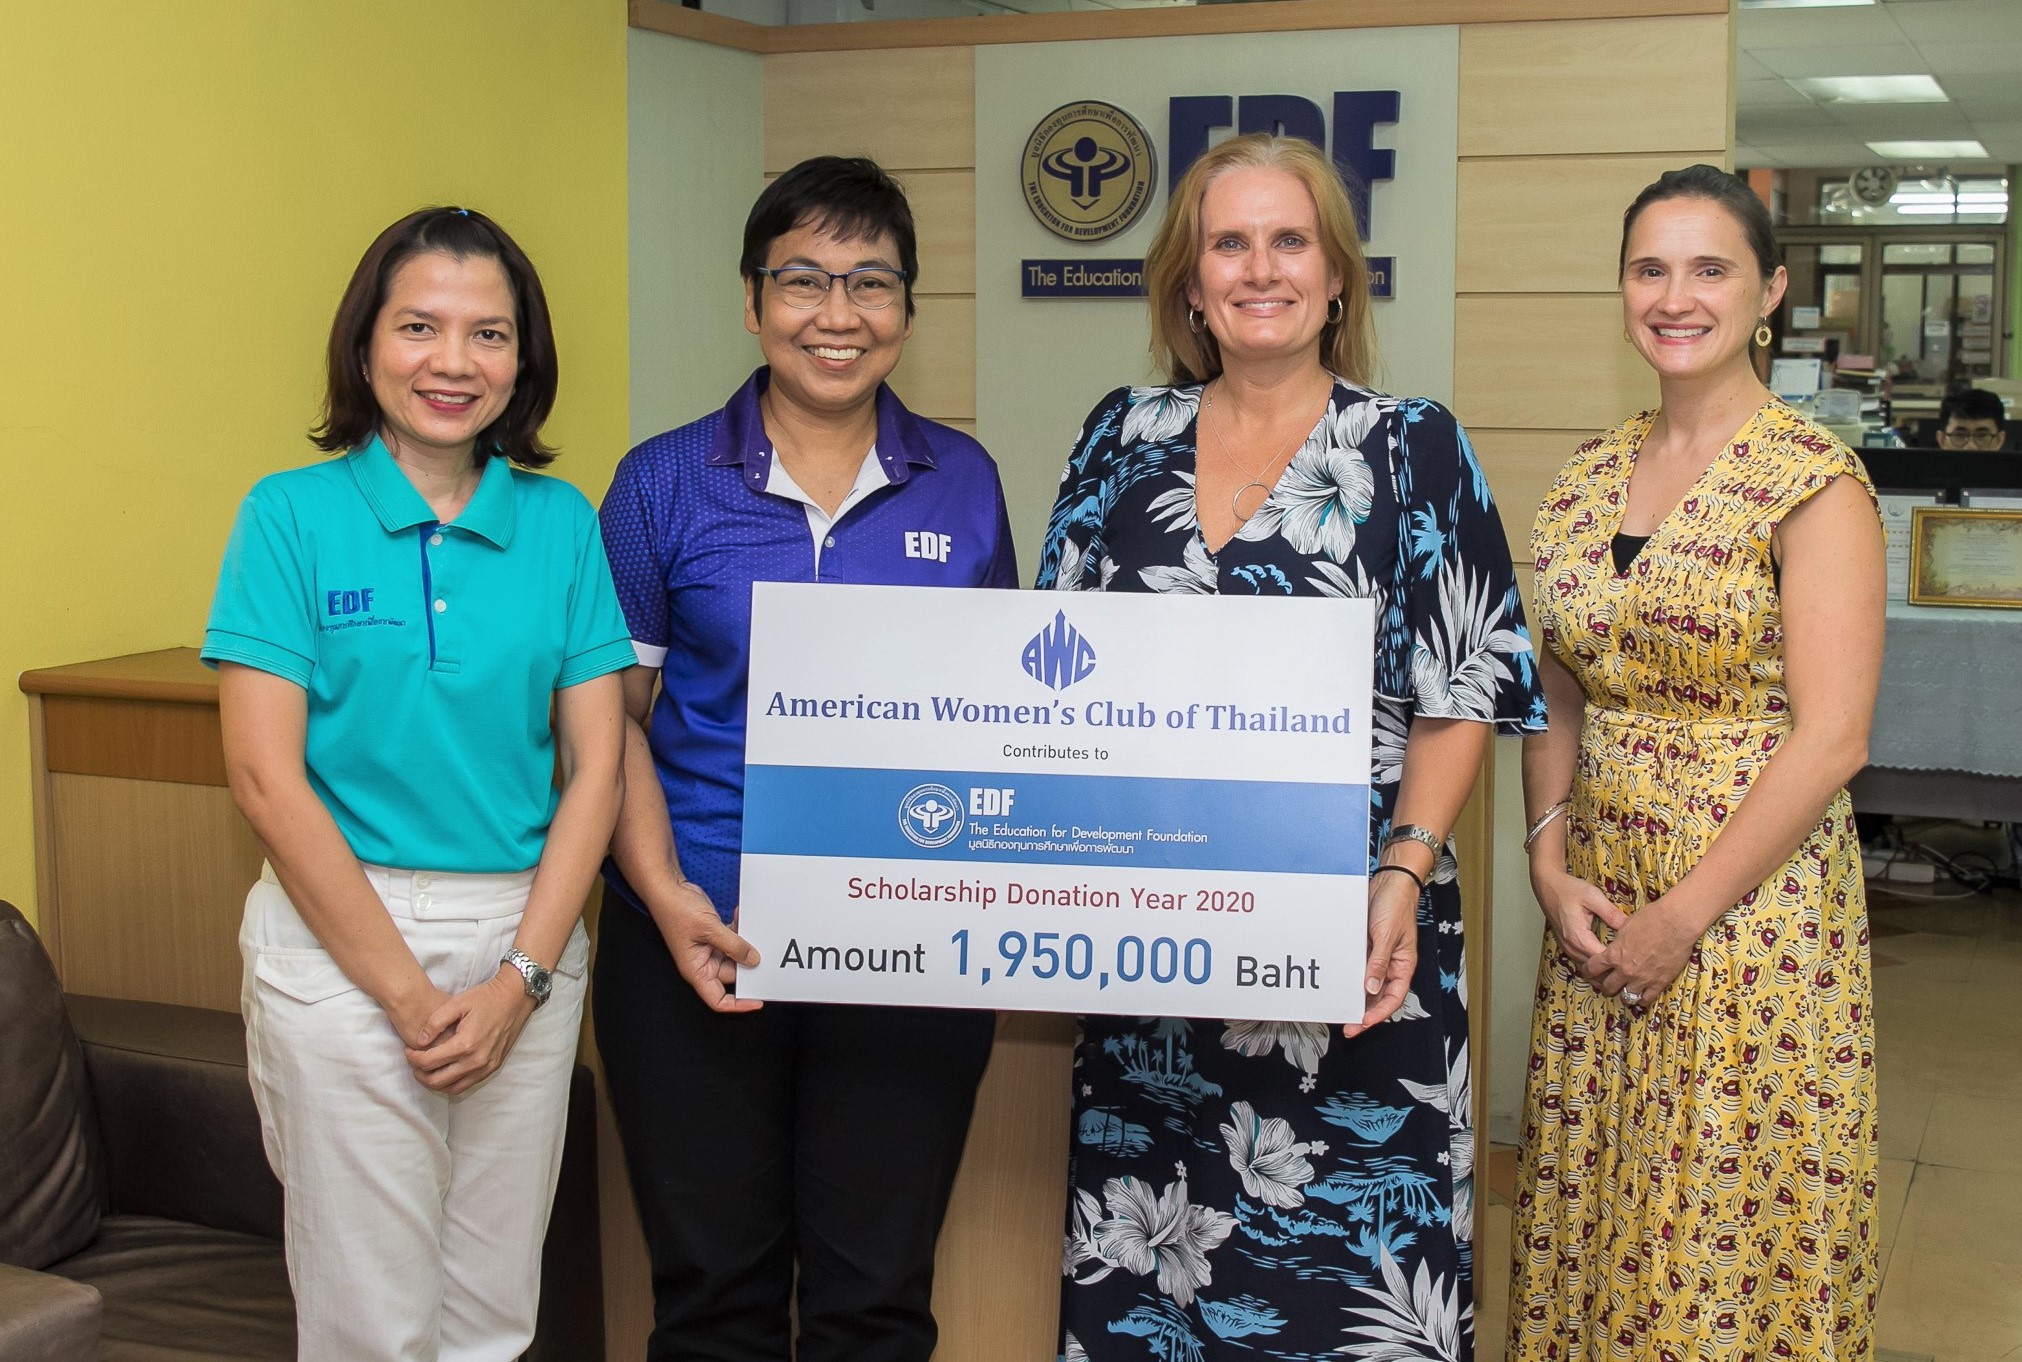 สมาคมสตรีอเมริกันแห่งประเทศไทยมอบทุนการศึกษา 1,950,000 บาท ผ่านมูลนิธิ EDF